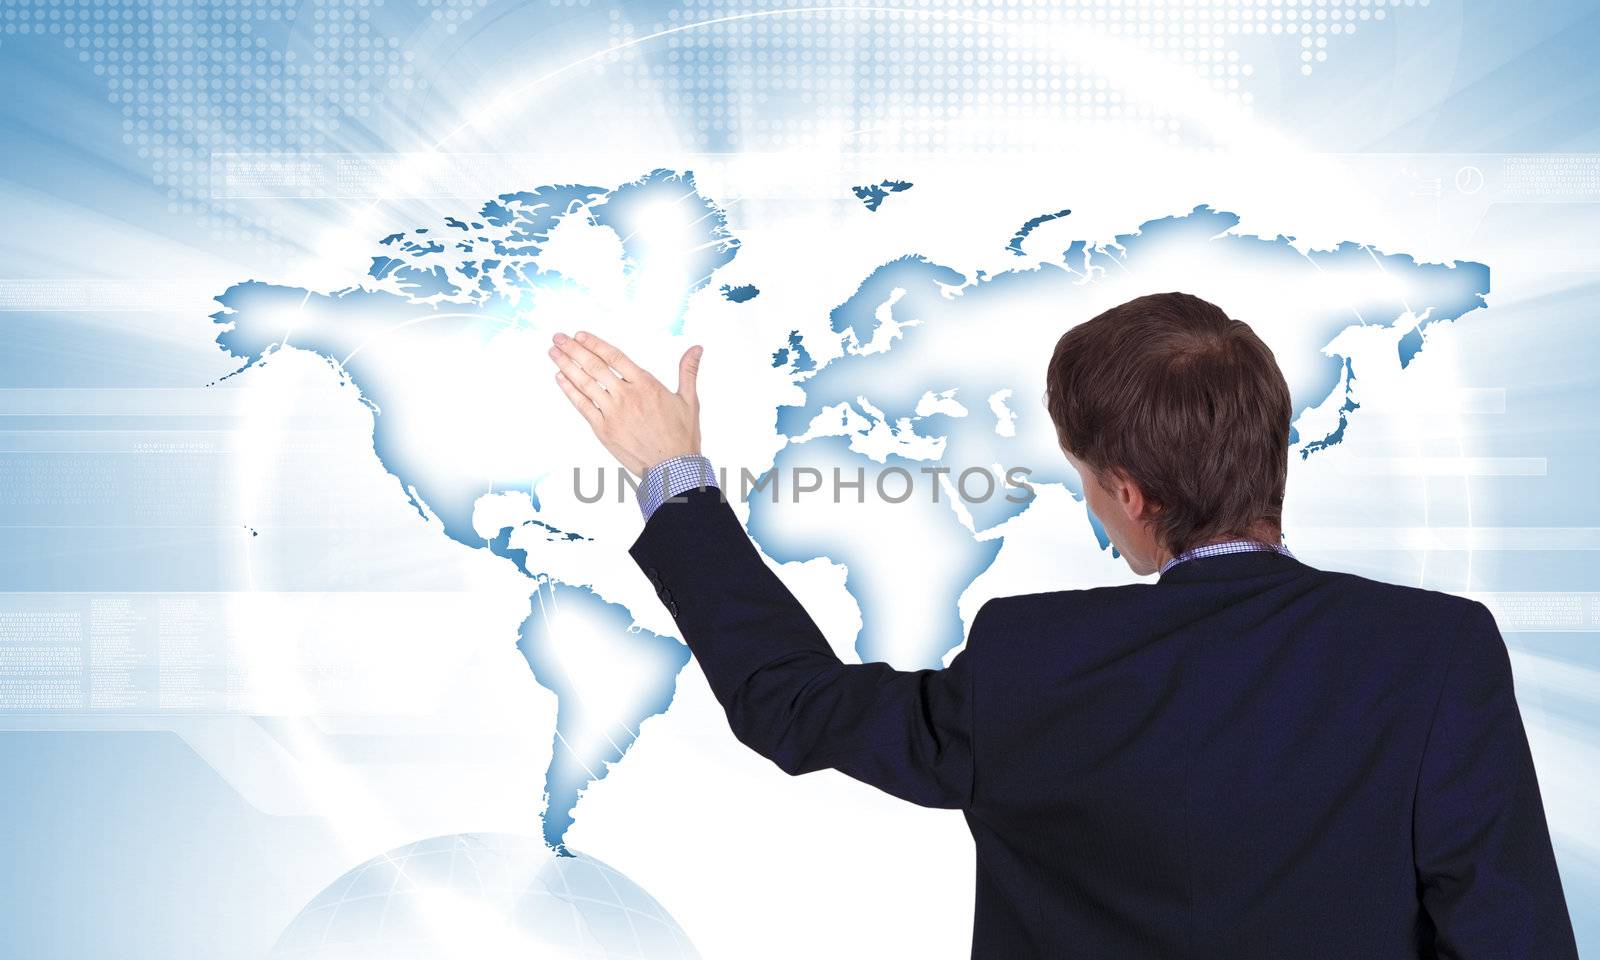 Modern Business World, A businessman navigating virtual world map